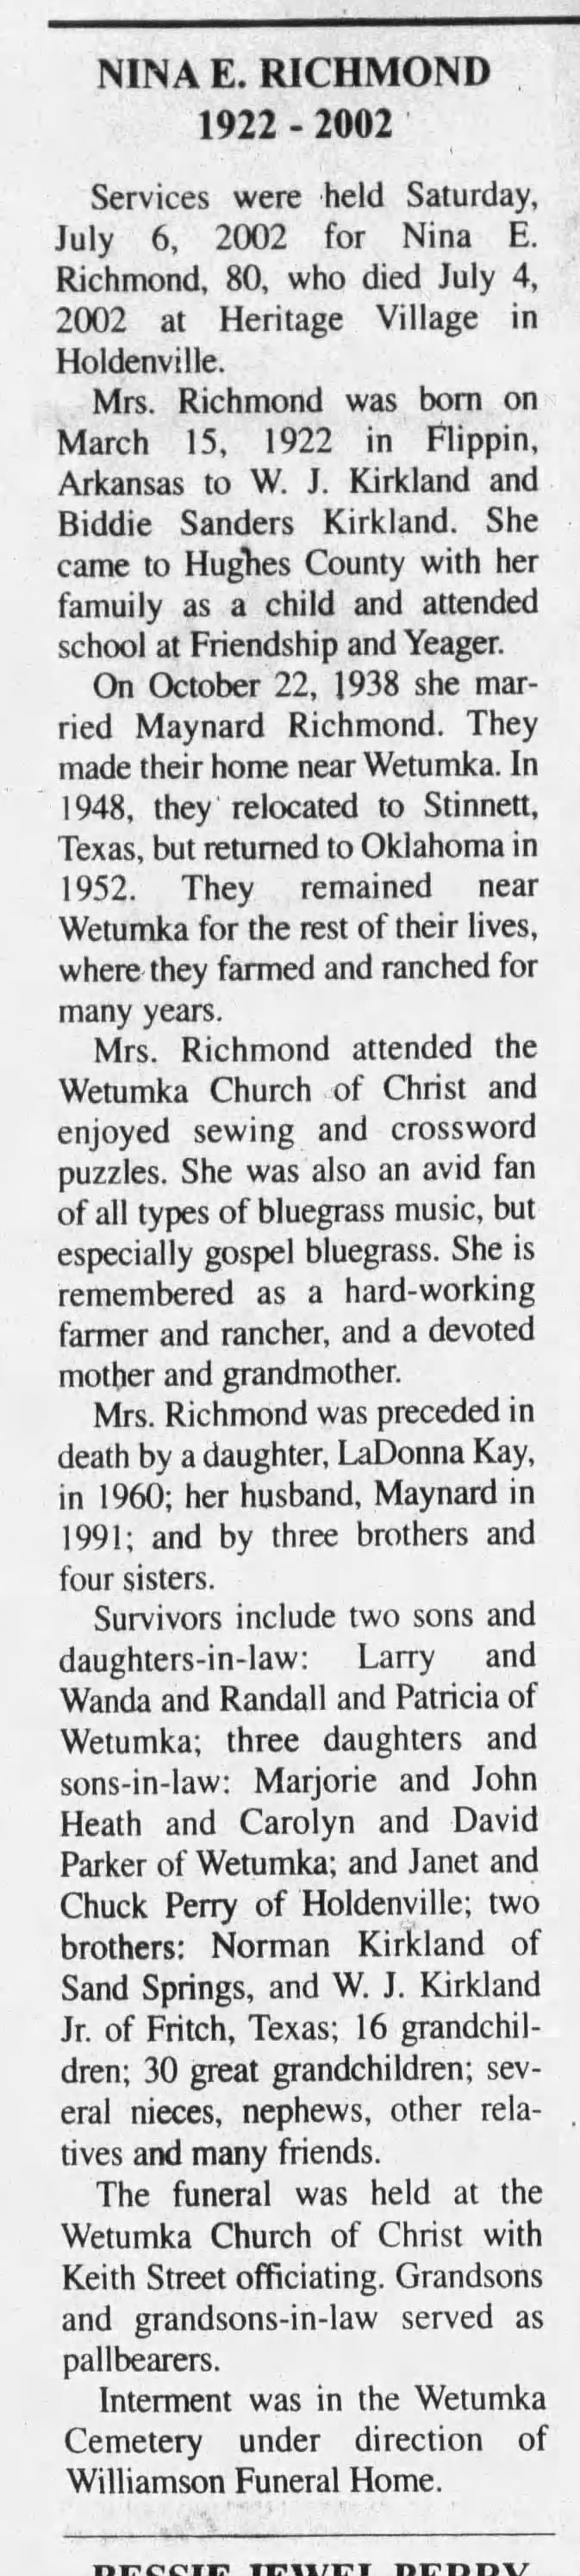 Obituary for NINA E RICHMOND